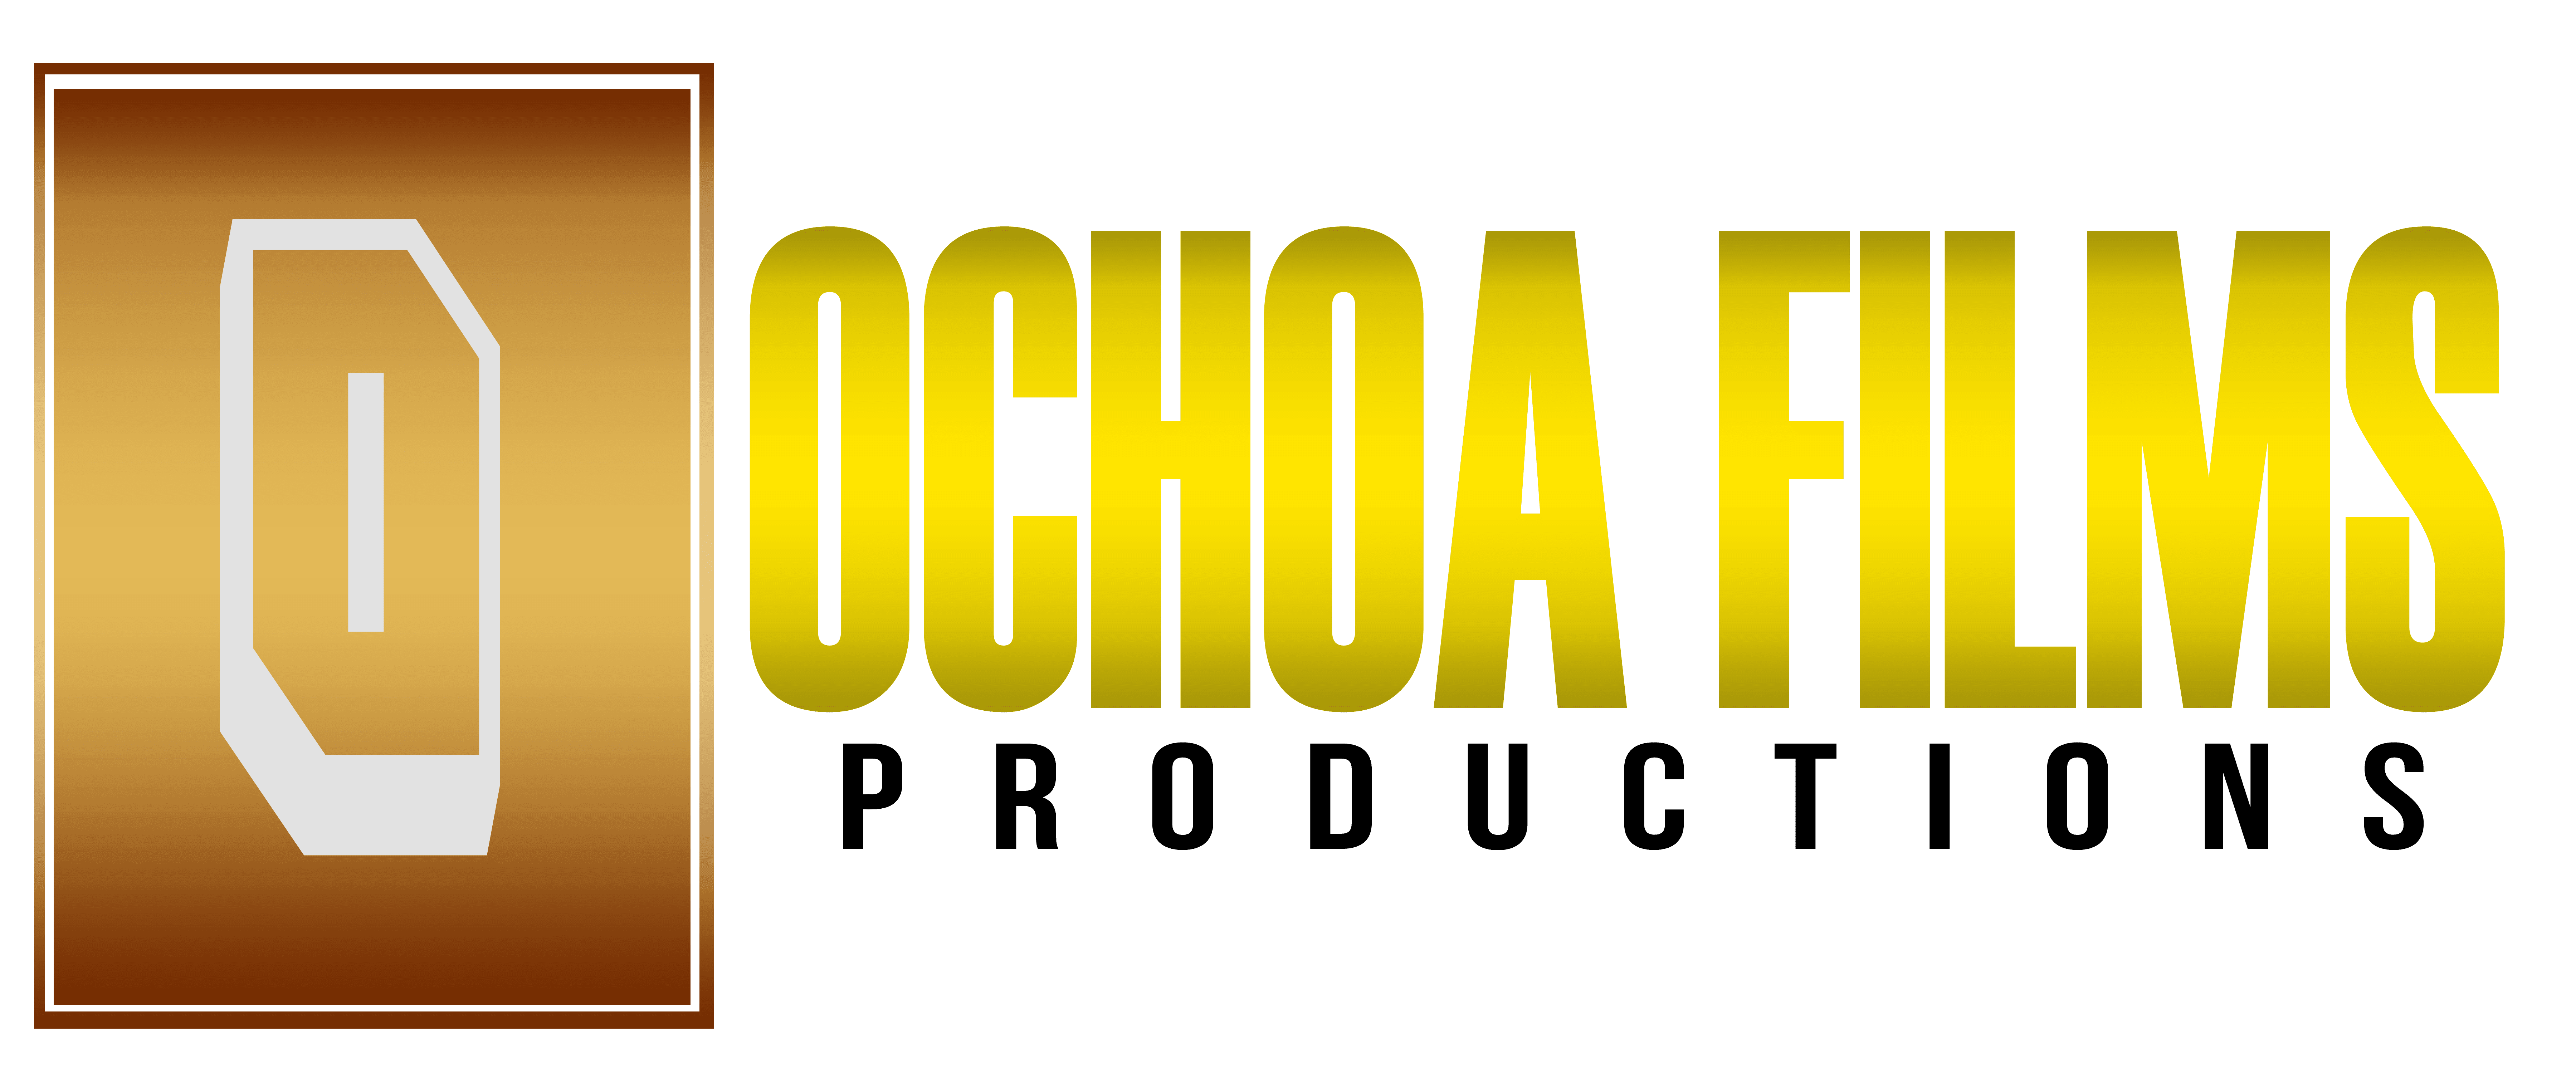 Ochoa Films